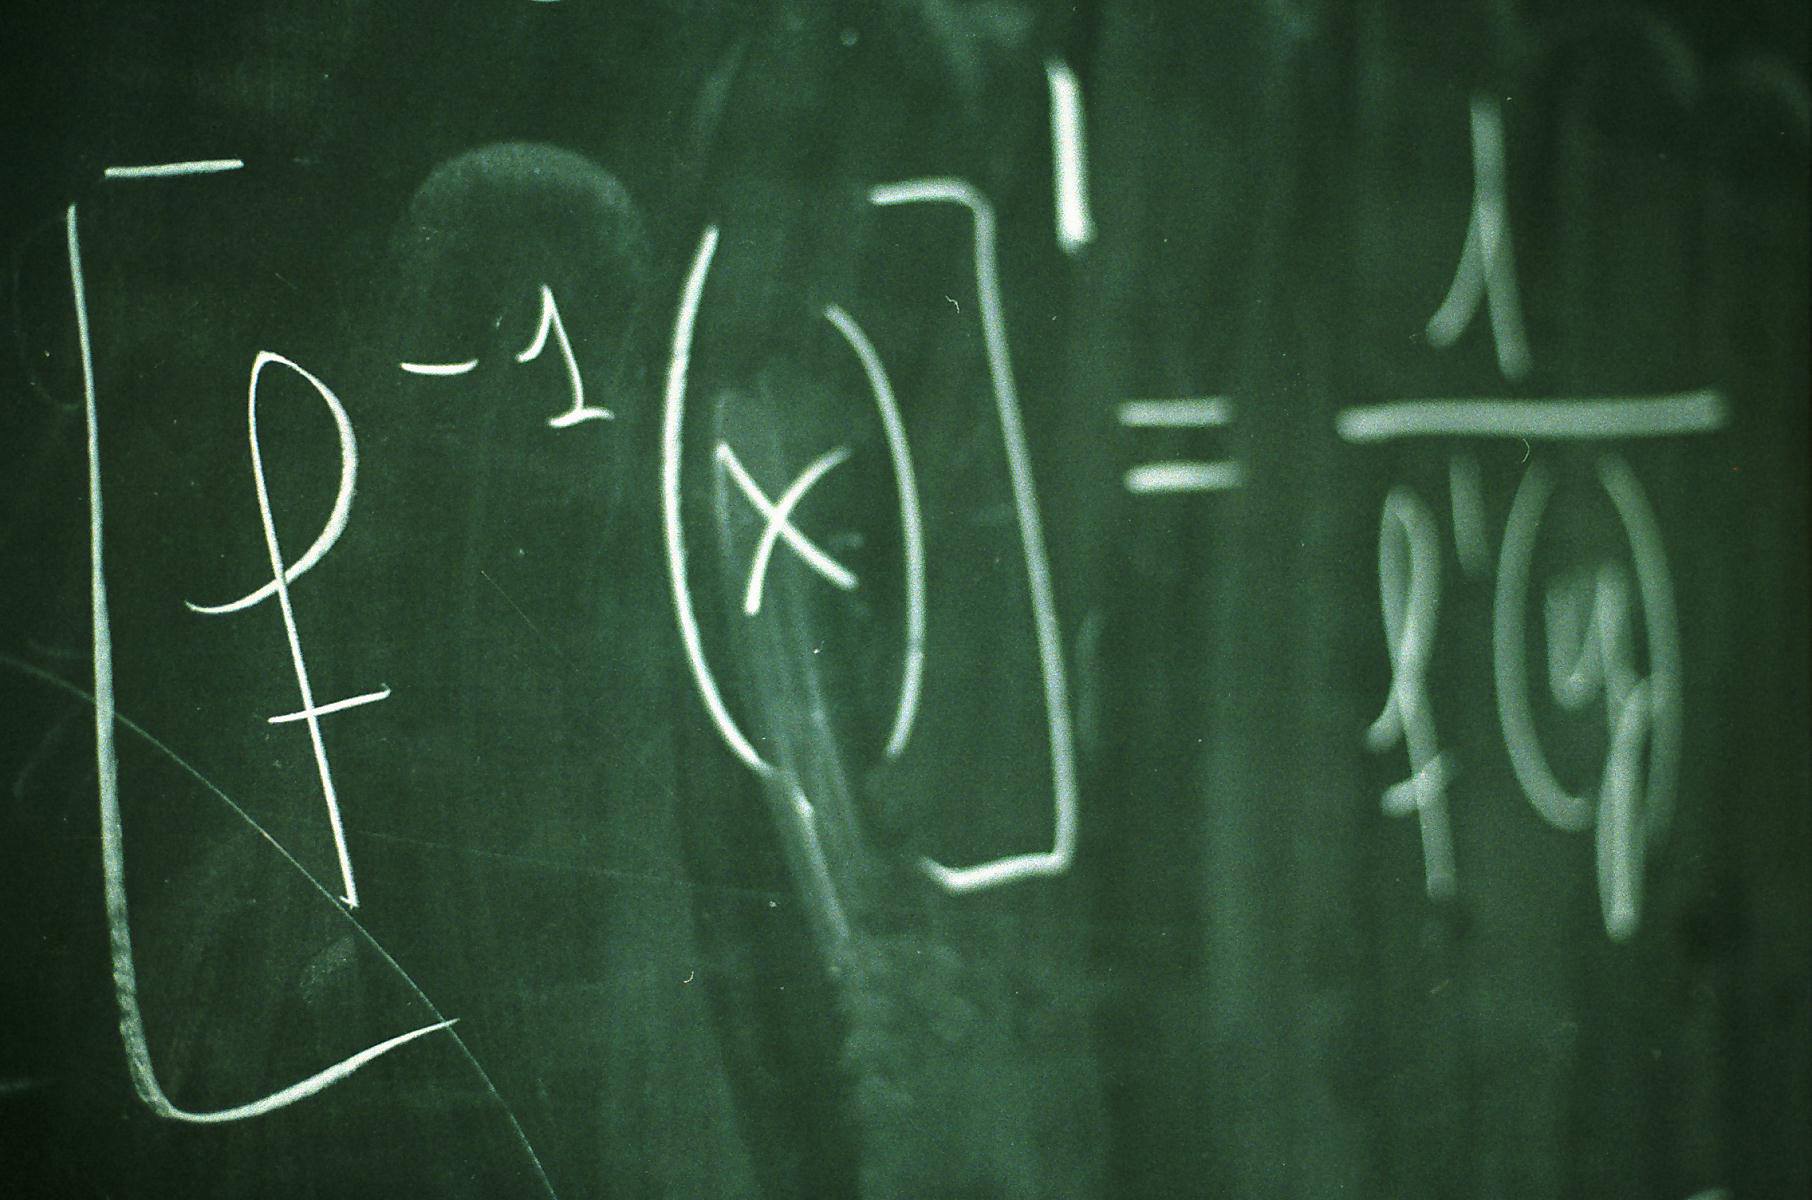 Formula written on chalkboard